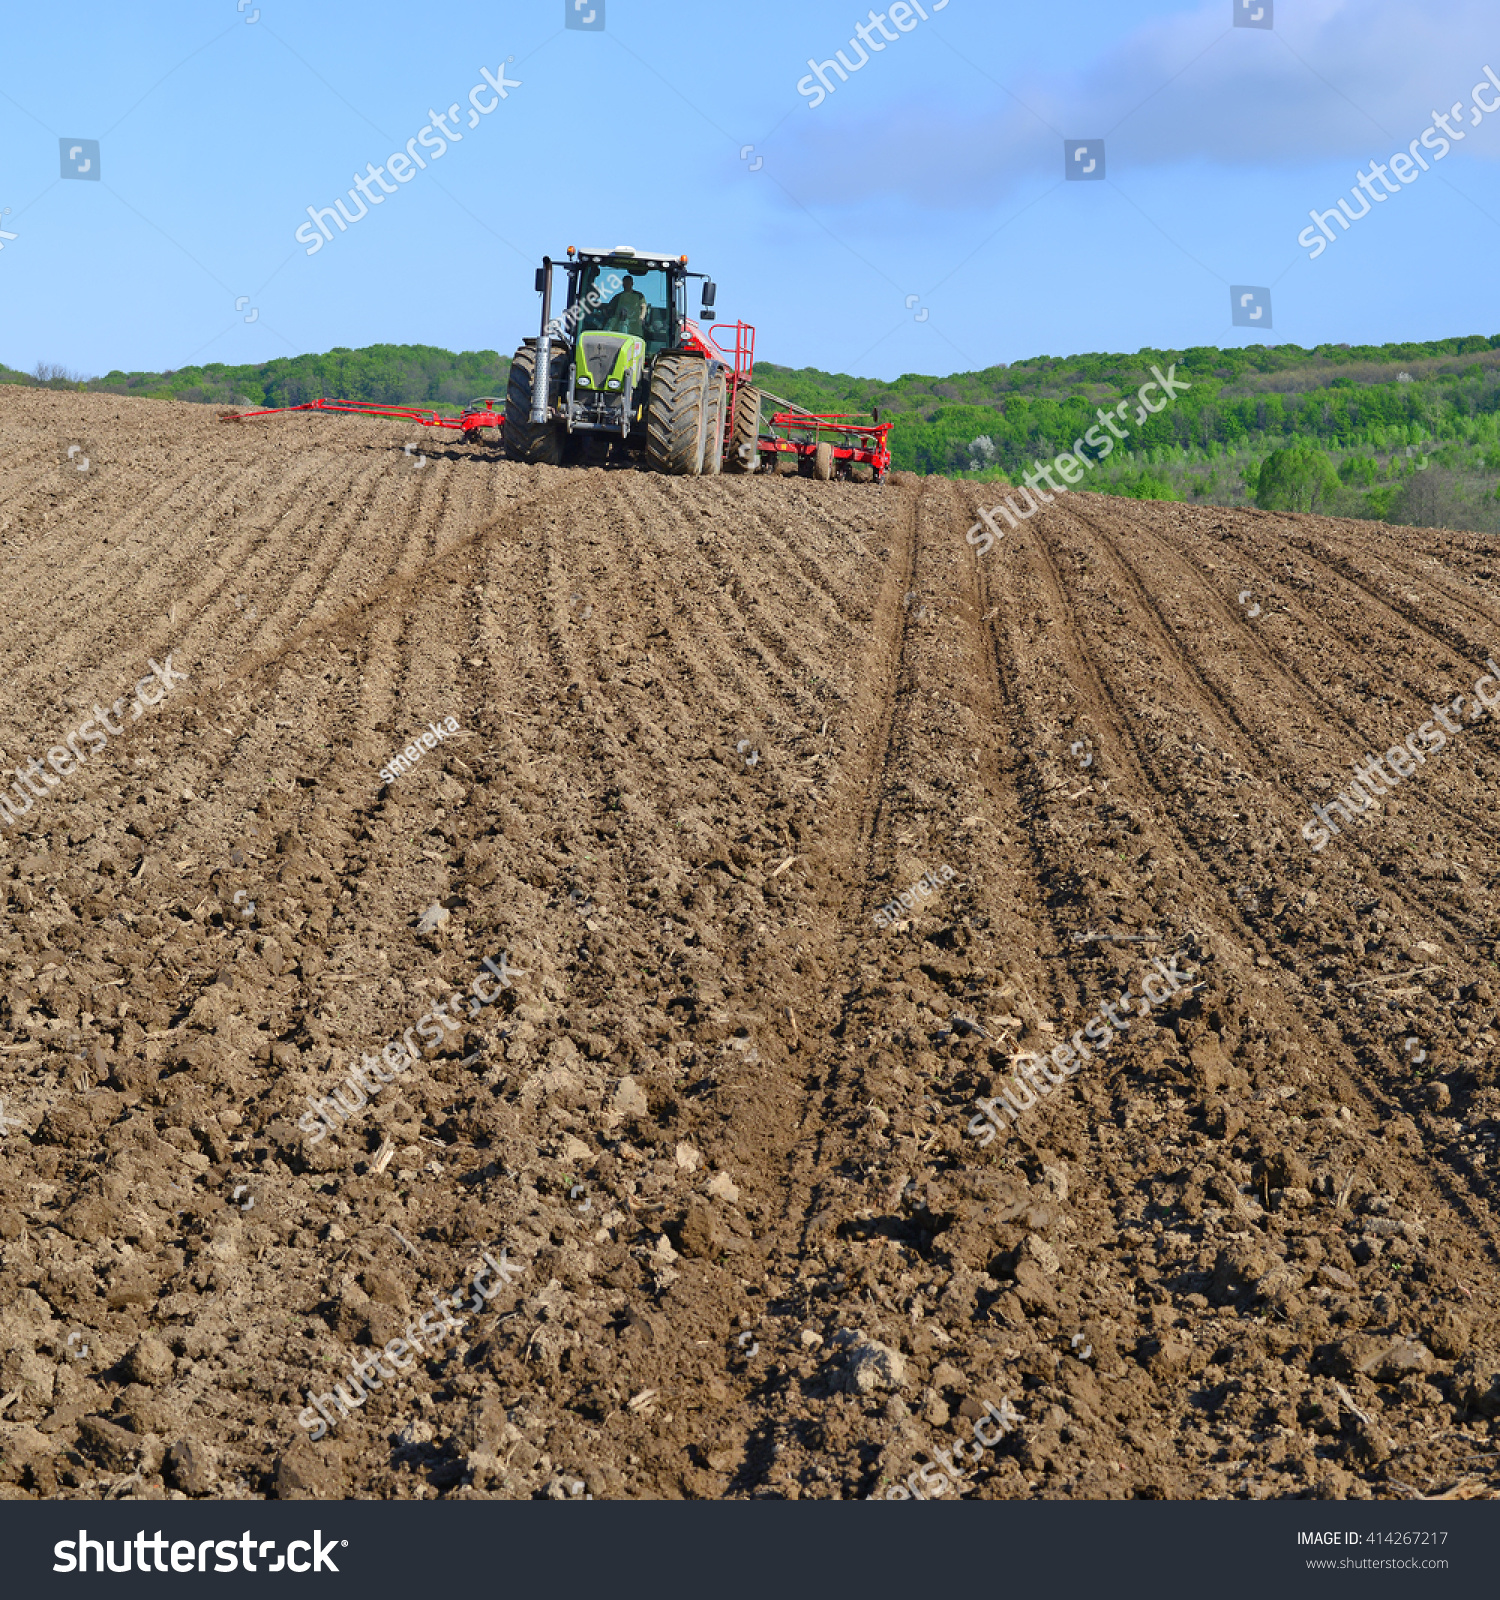 Kalush Ukraine April 18 Planting Corn Stock Photo 414267217 ...